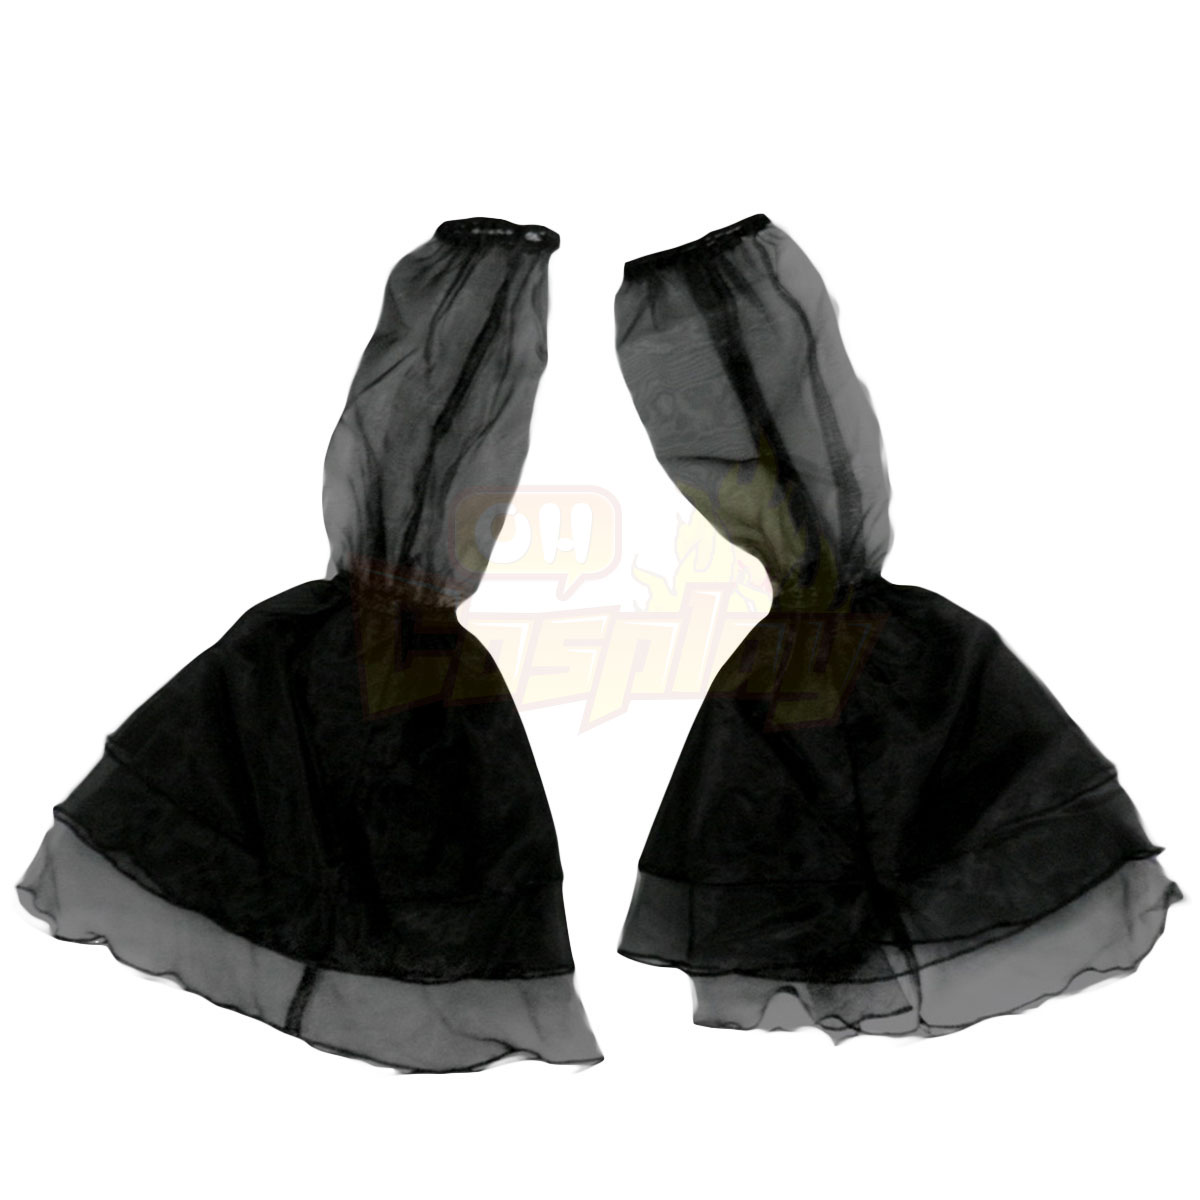 דלוקס לוליטה תרבות שחור Spaghitti צמיגים קצר שמלות קוספליי קוספליי